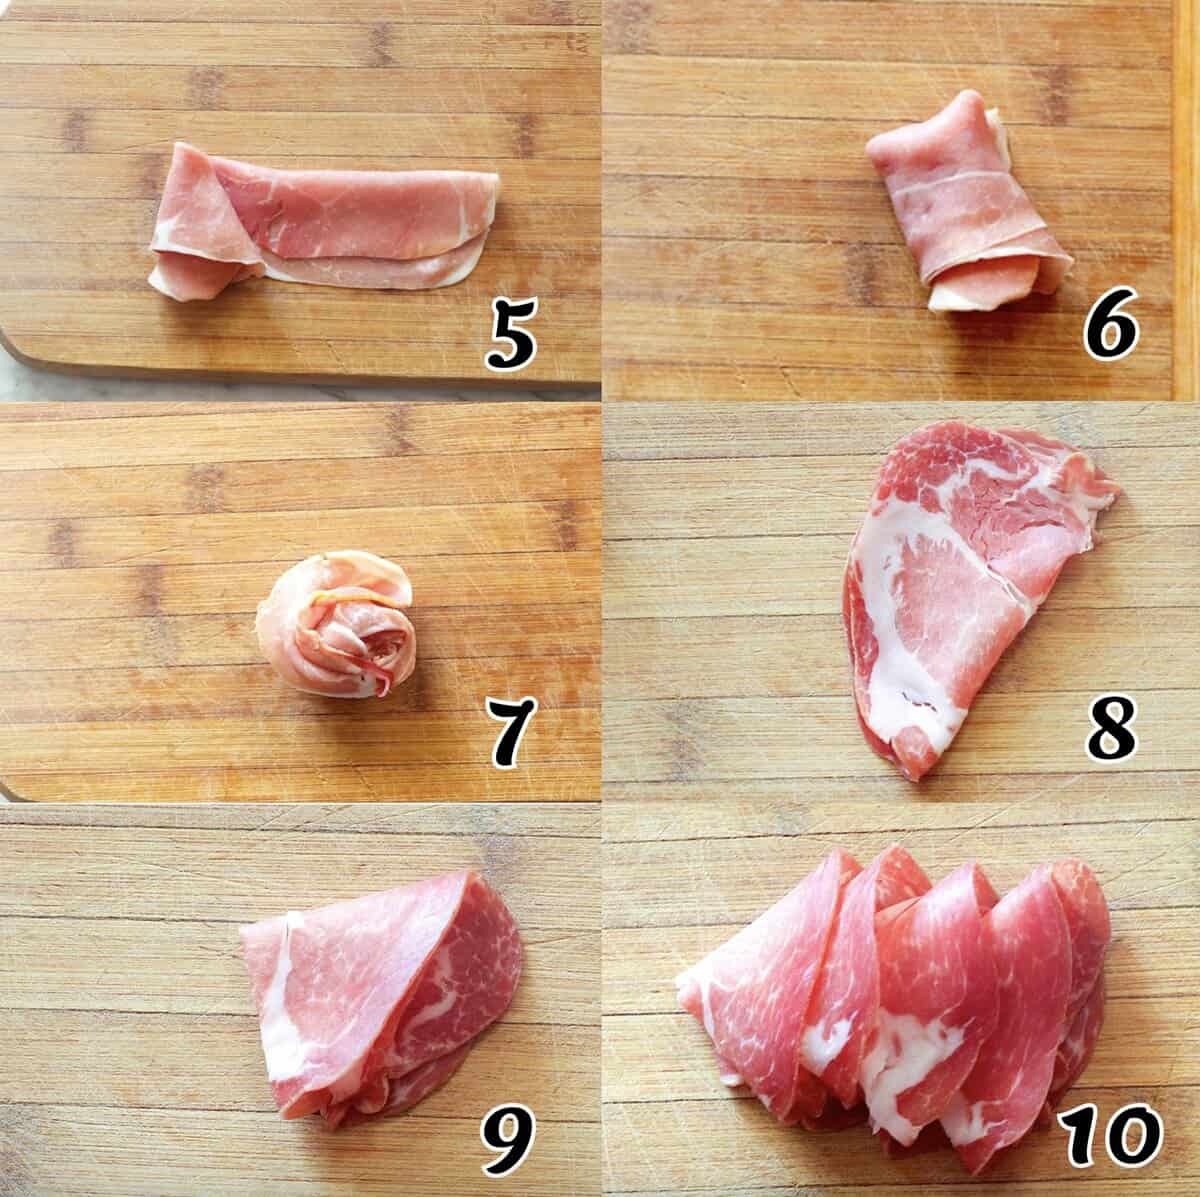 keep folding deli meat